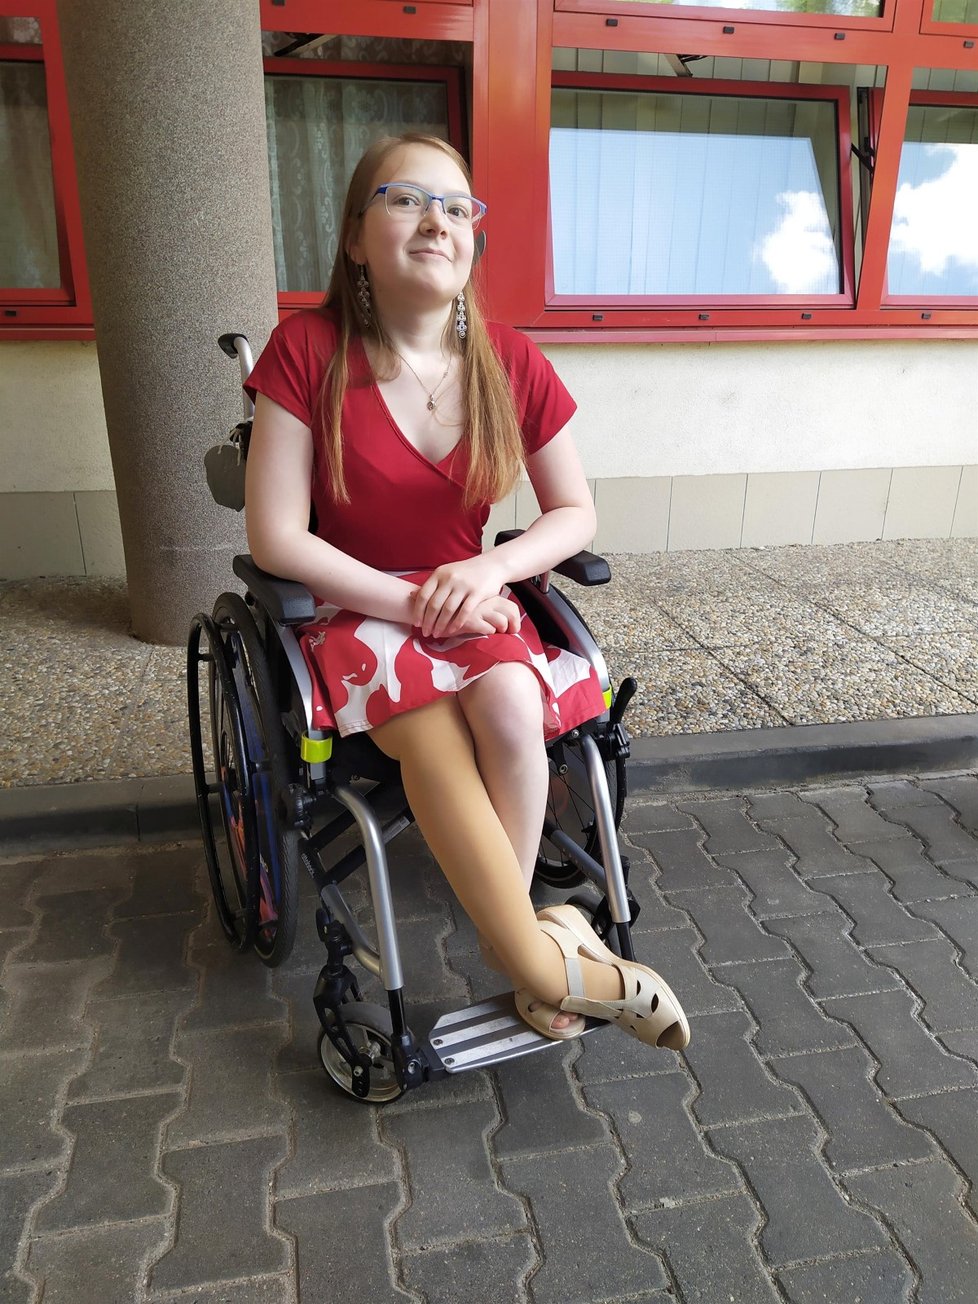 Cévní malformace postihla Hance (17) nohu. Po experimentální léčbě se dokonce už začíná zvedat z vozíku.